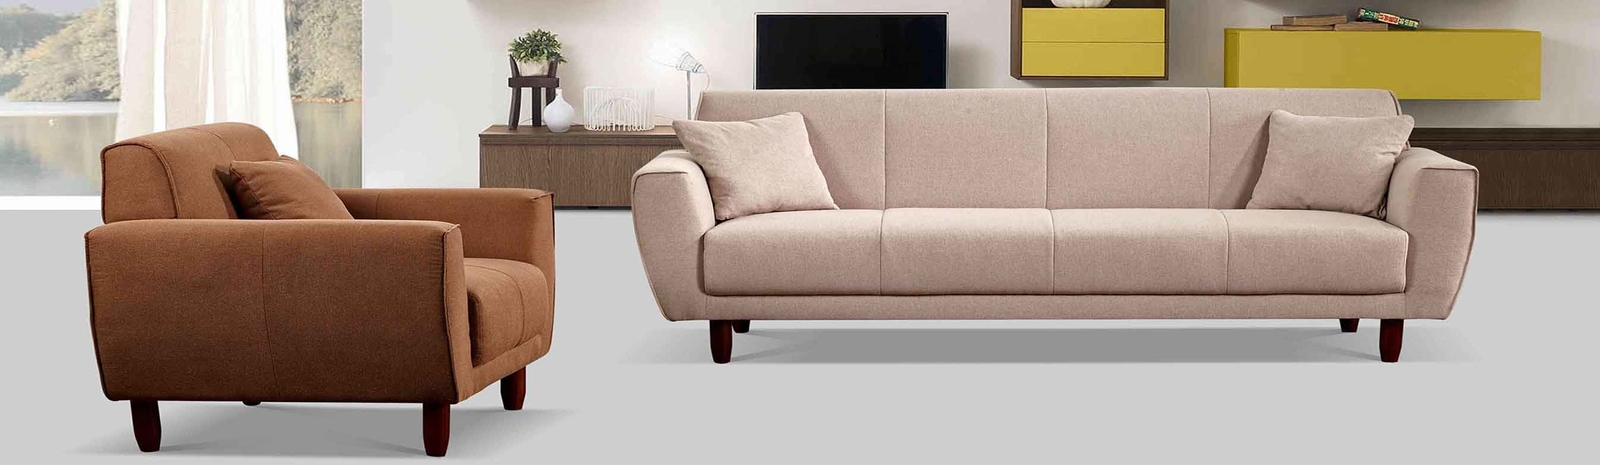 Sofa z tkaniny lnianej